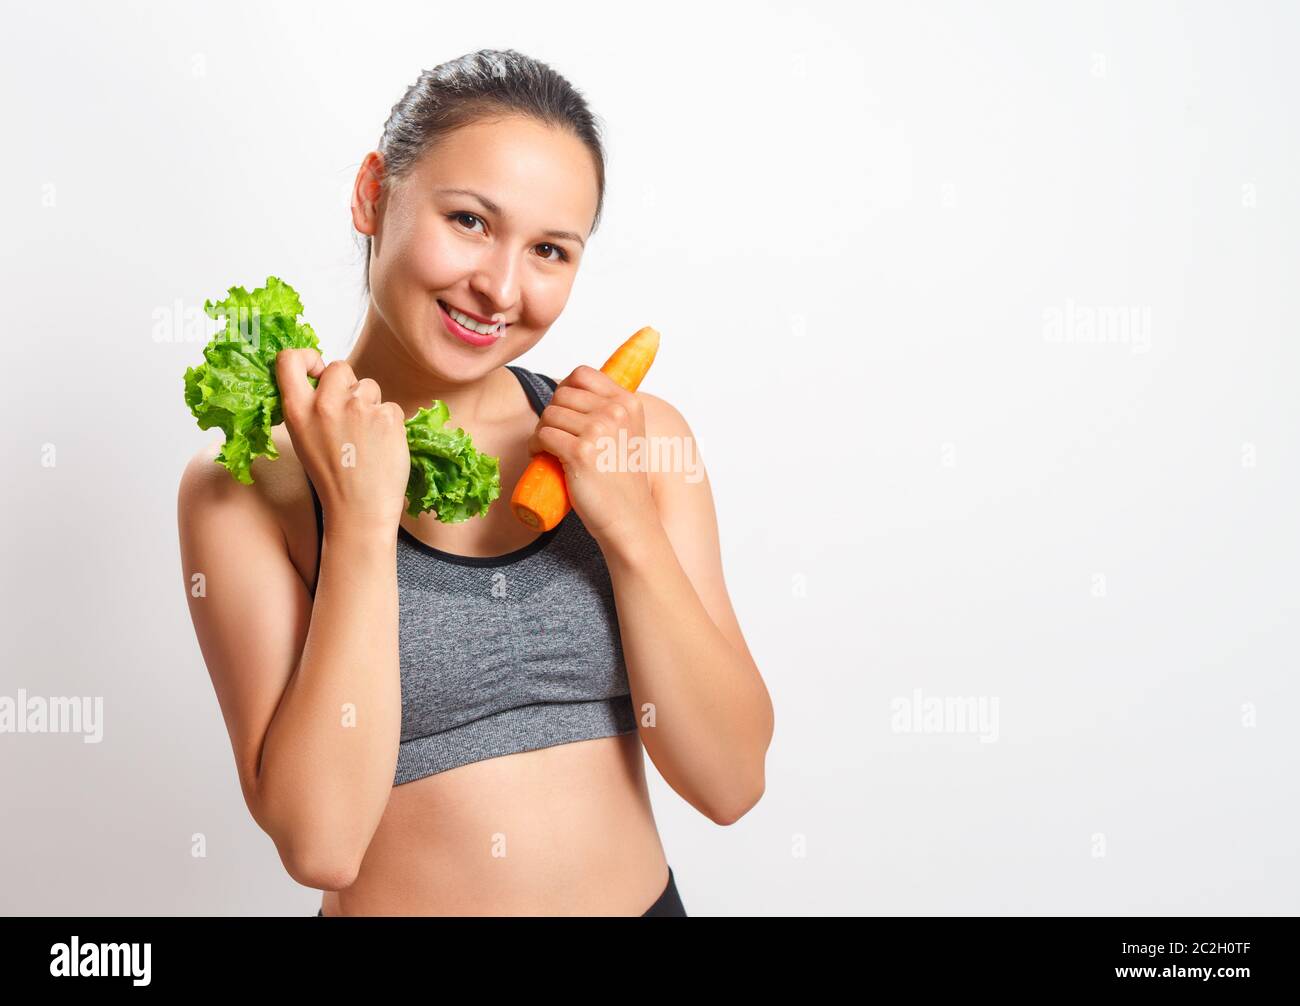 Schlanke junge Frau mit einer schönen Figur hält Gemüse in den Händen - Karotten und Salat Stockfoto